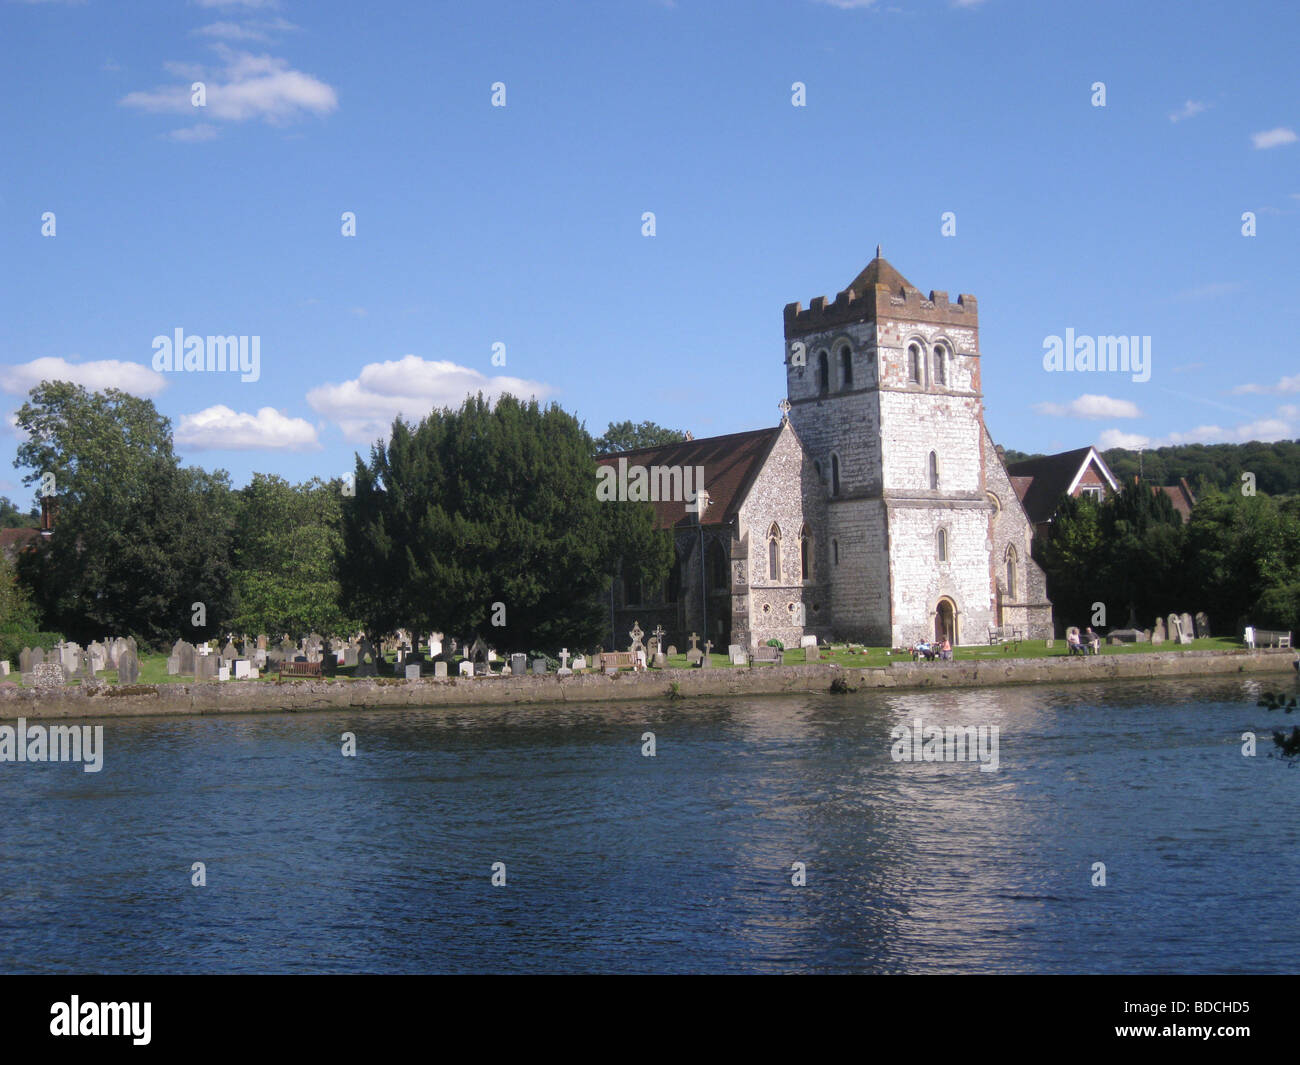 Chiesa di tutti i santi, Bisham, accanto al Tamigi vicino a Henley-on-Thames, Inghilterra Foto Stock